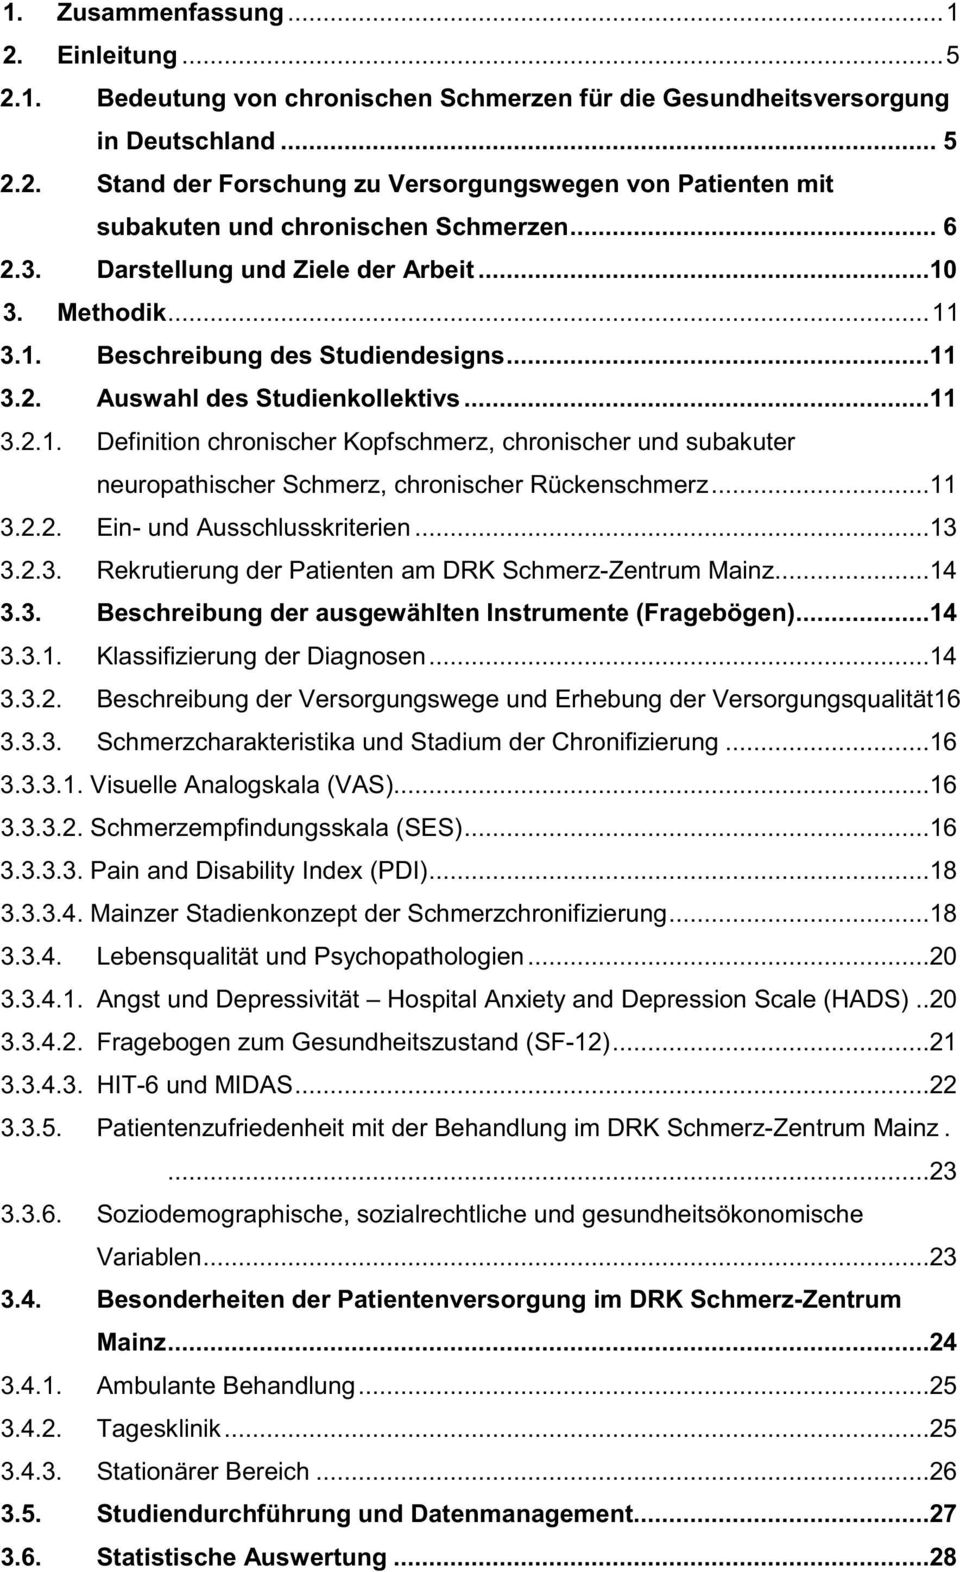 ..11 3.2.2. Ein- und Ausschlusskriterien...13 3.2.3. Rekrutierung der Patienten am DRK Schmerz-Zentrum Mainz...14 3.3. Beschreibung der ausgewählten Instrumente (Fragebögen)...14 3.3.1. Klassifizierung der Diagnosen.